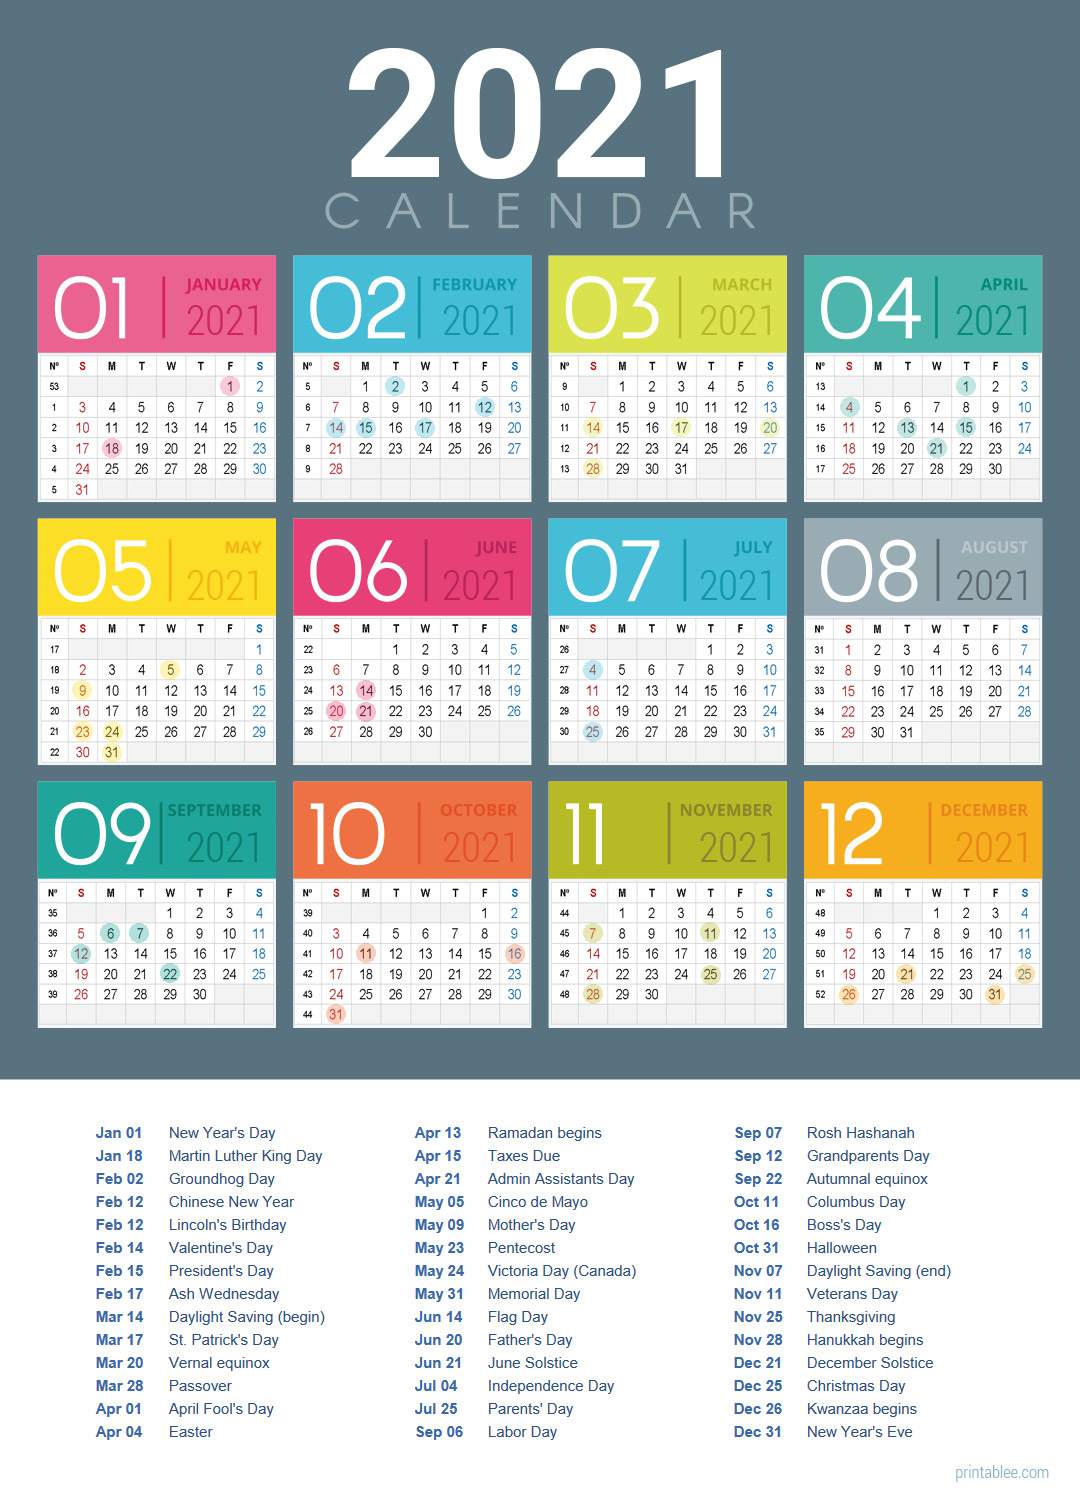 10 Best 2021 Calendar Printable Free - Printablee